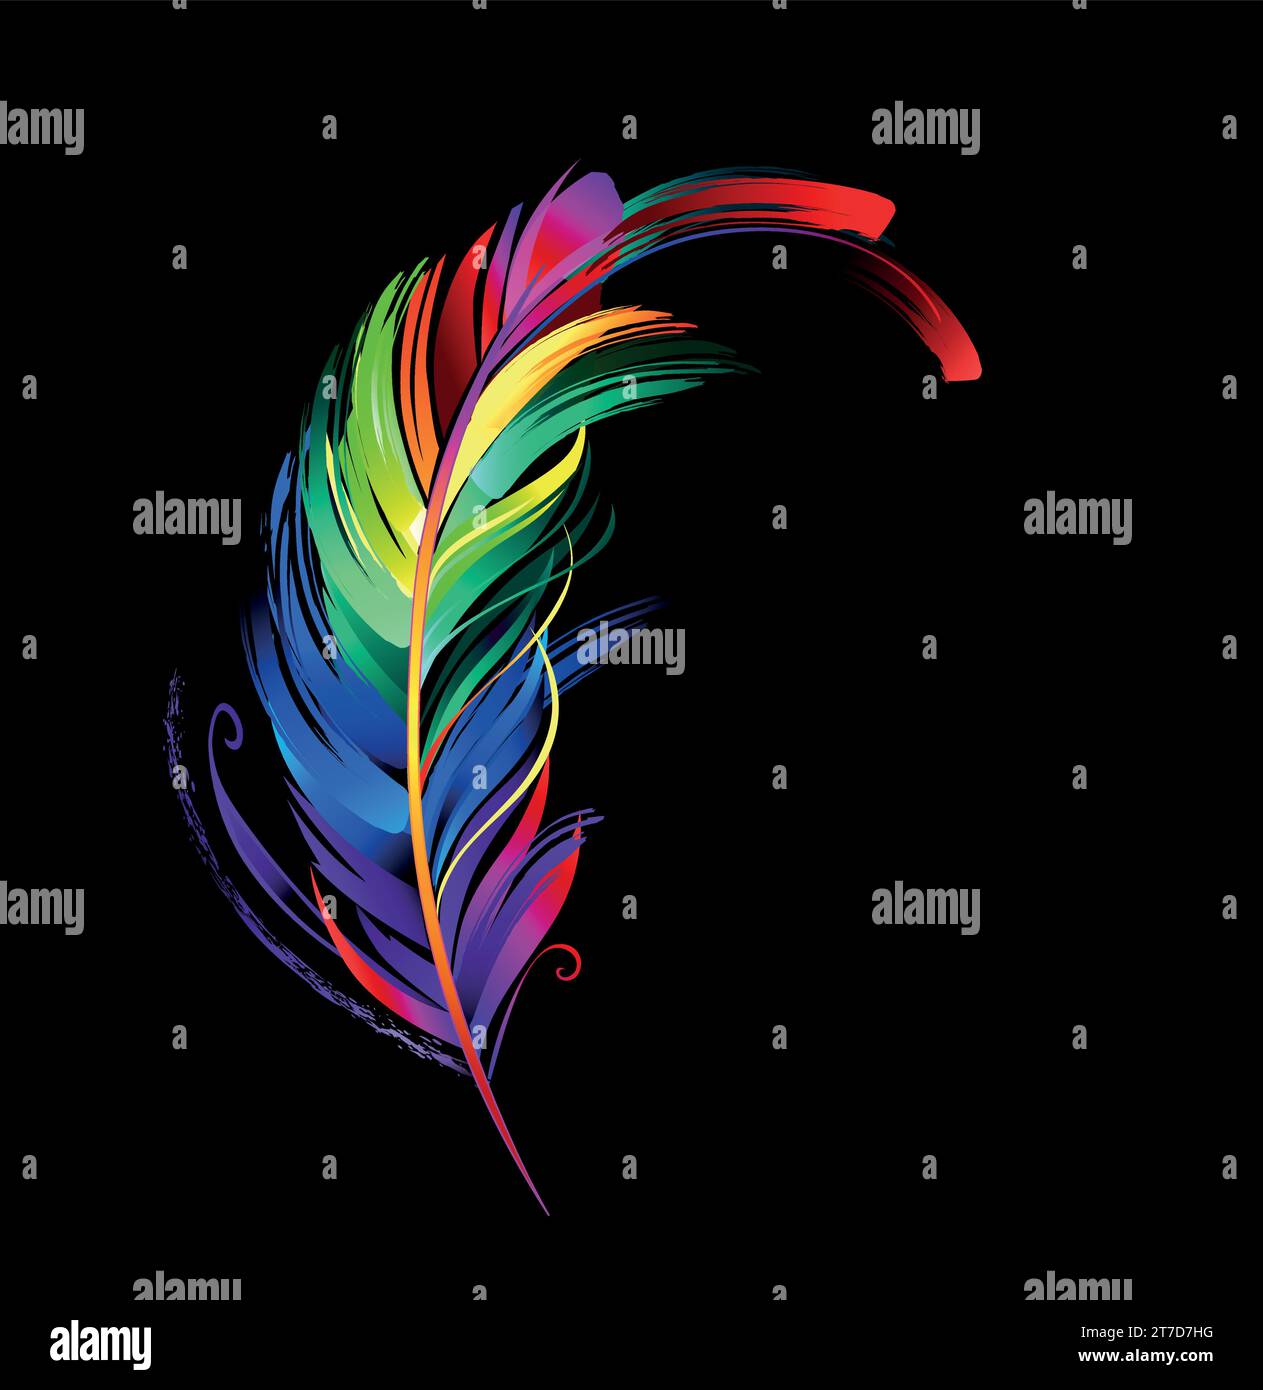 Regenbogen, malerische Feder, gemalt mit großen Strichen fluoreszierender Farbe auf schwarzem Hintergrund. Ausdrucksstarke Zeichnung mit leuchtender Farbe. Stock Vektor